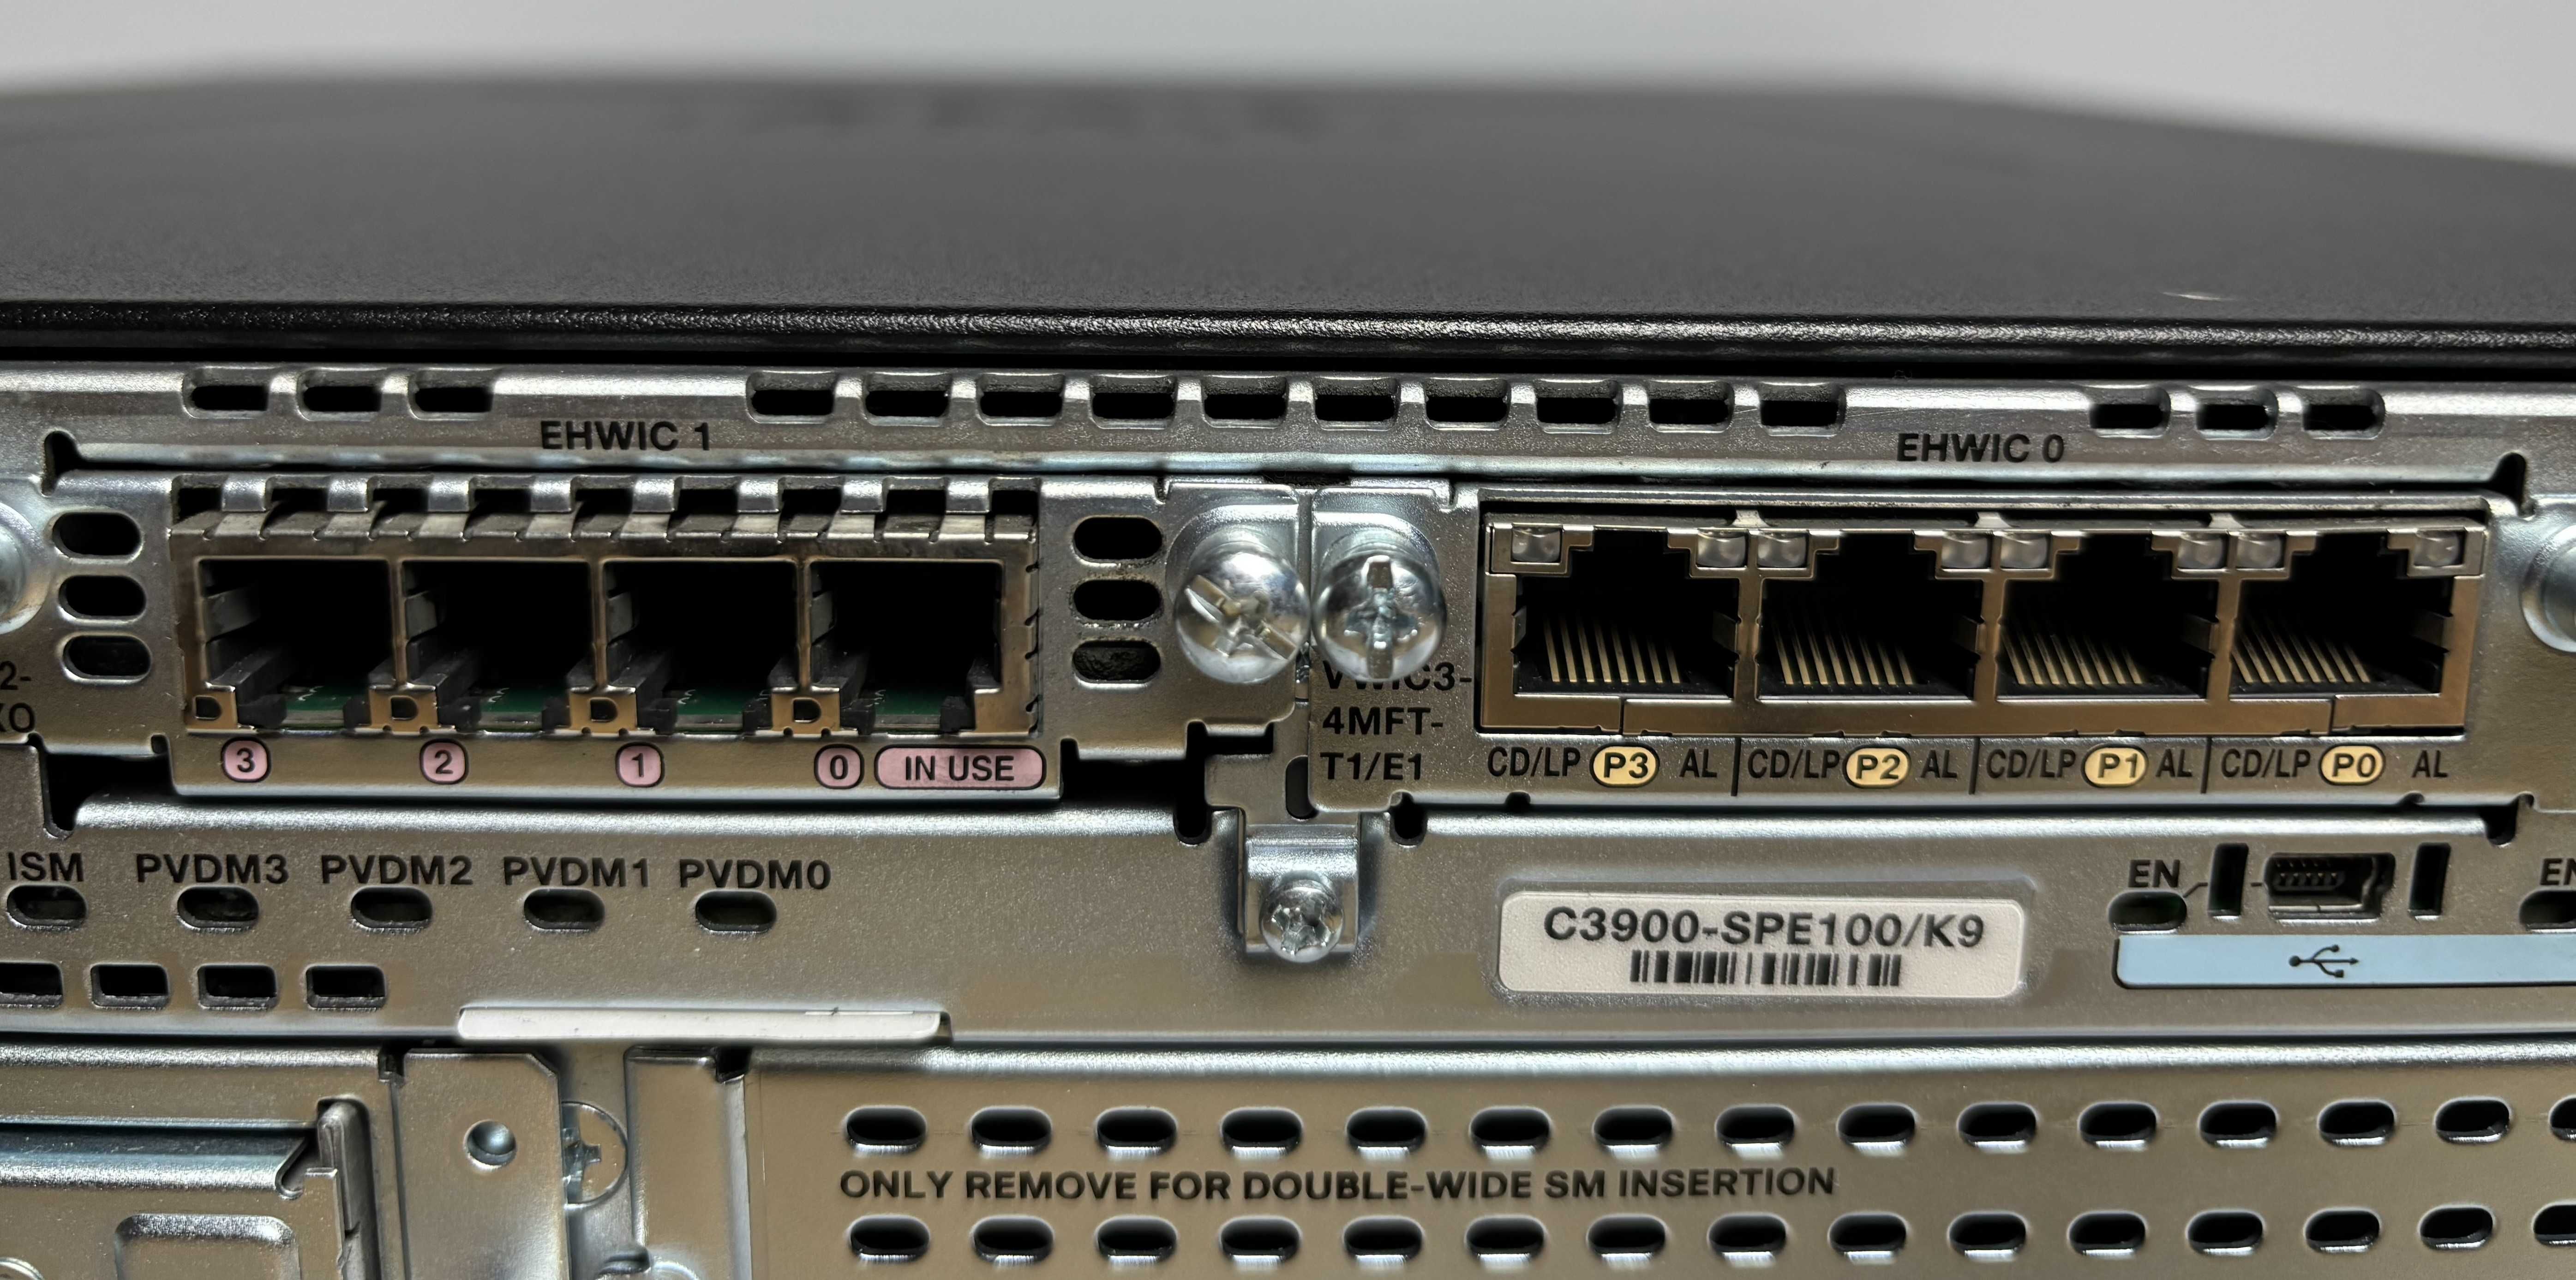 Маршрутизатор Cisco 3925 с большим кол-вом модулей расширения